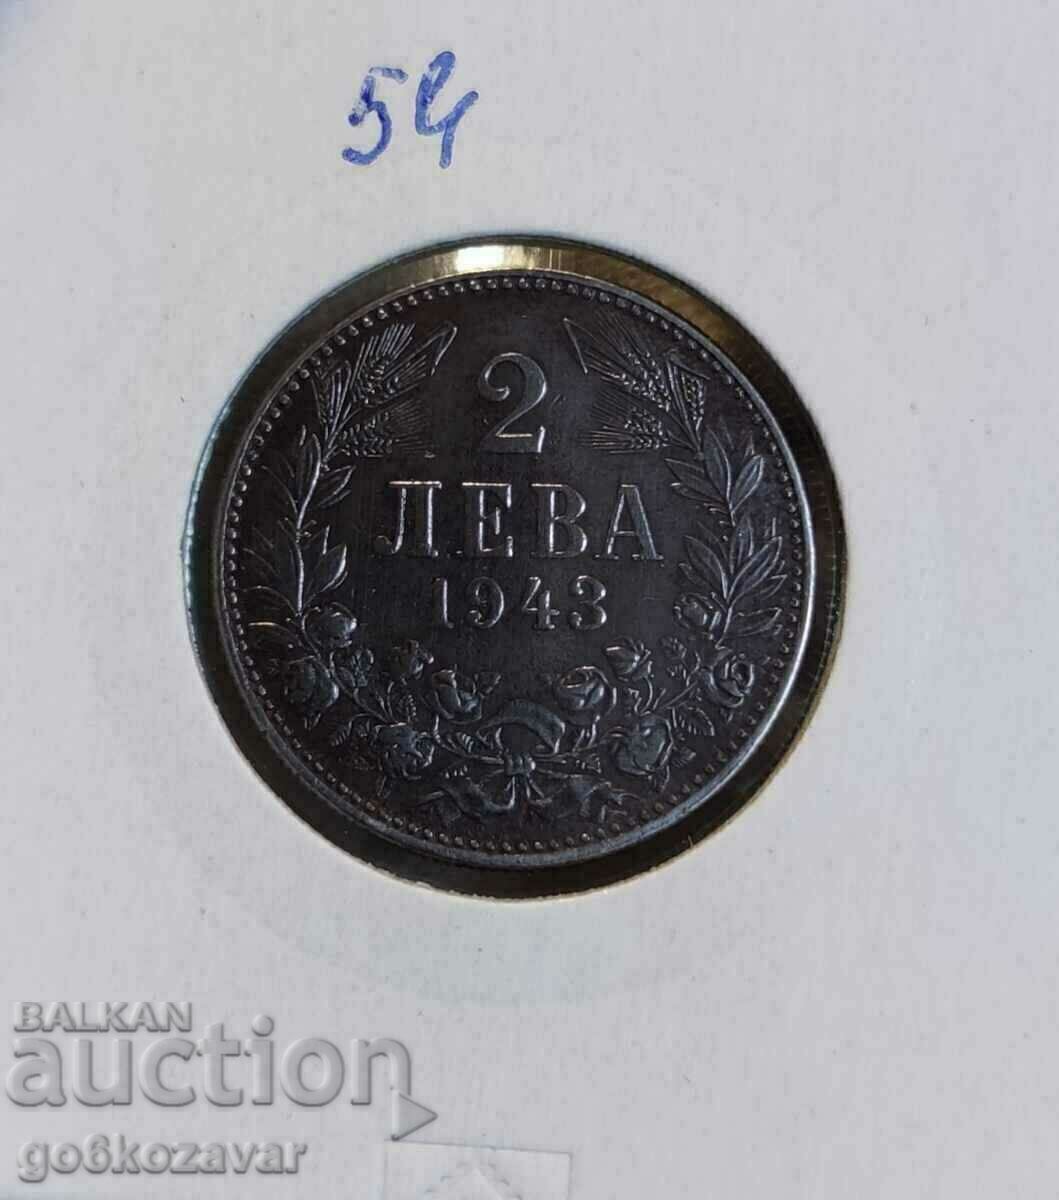 Bulgaria 2 BGN 1943 Iron! Top coin!